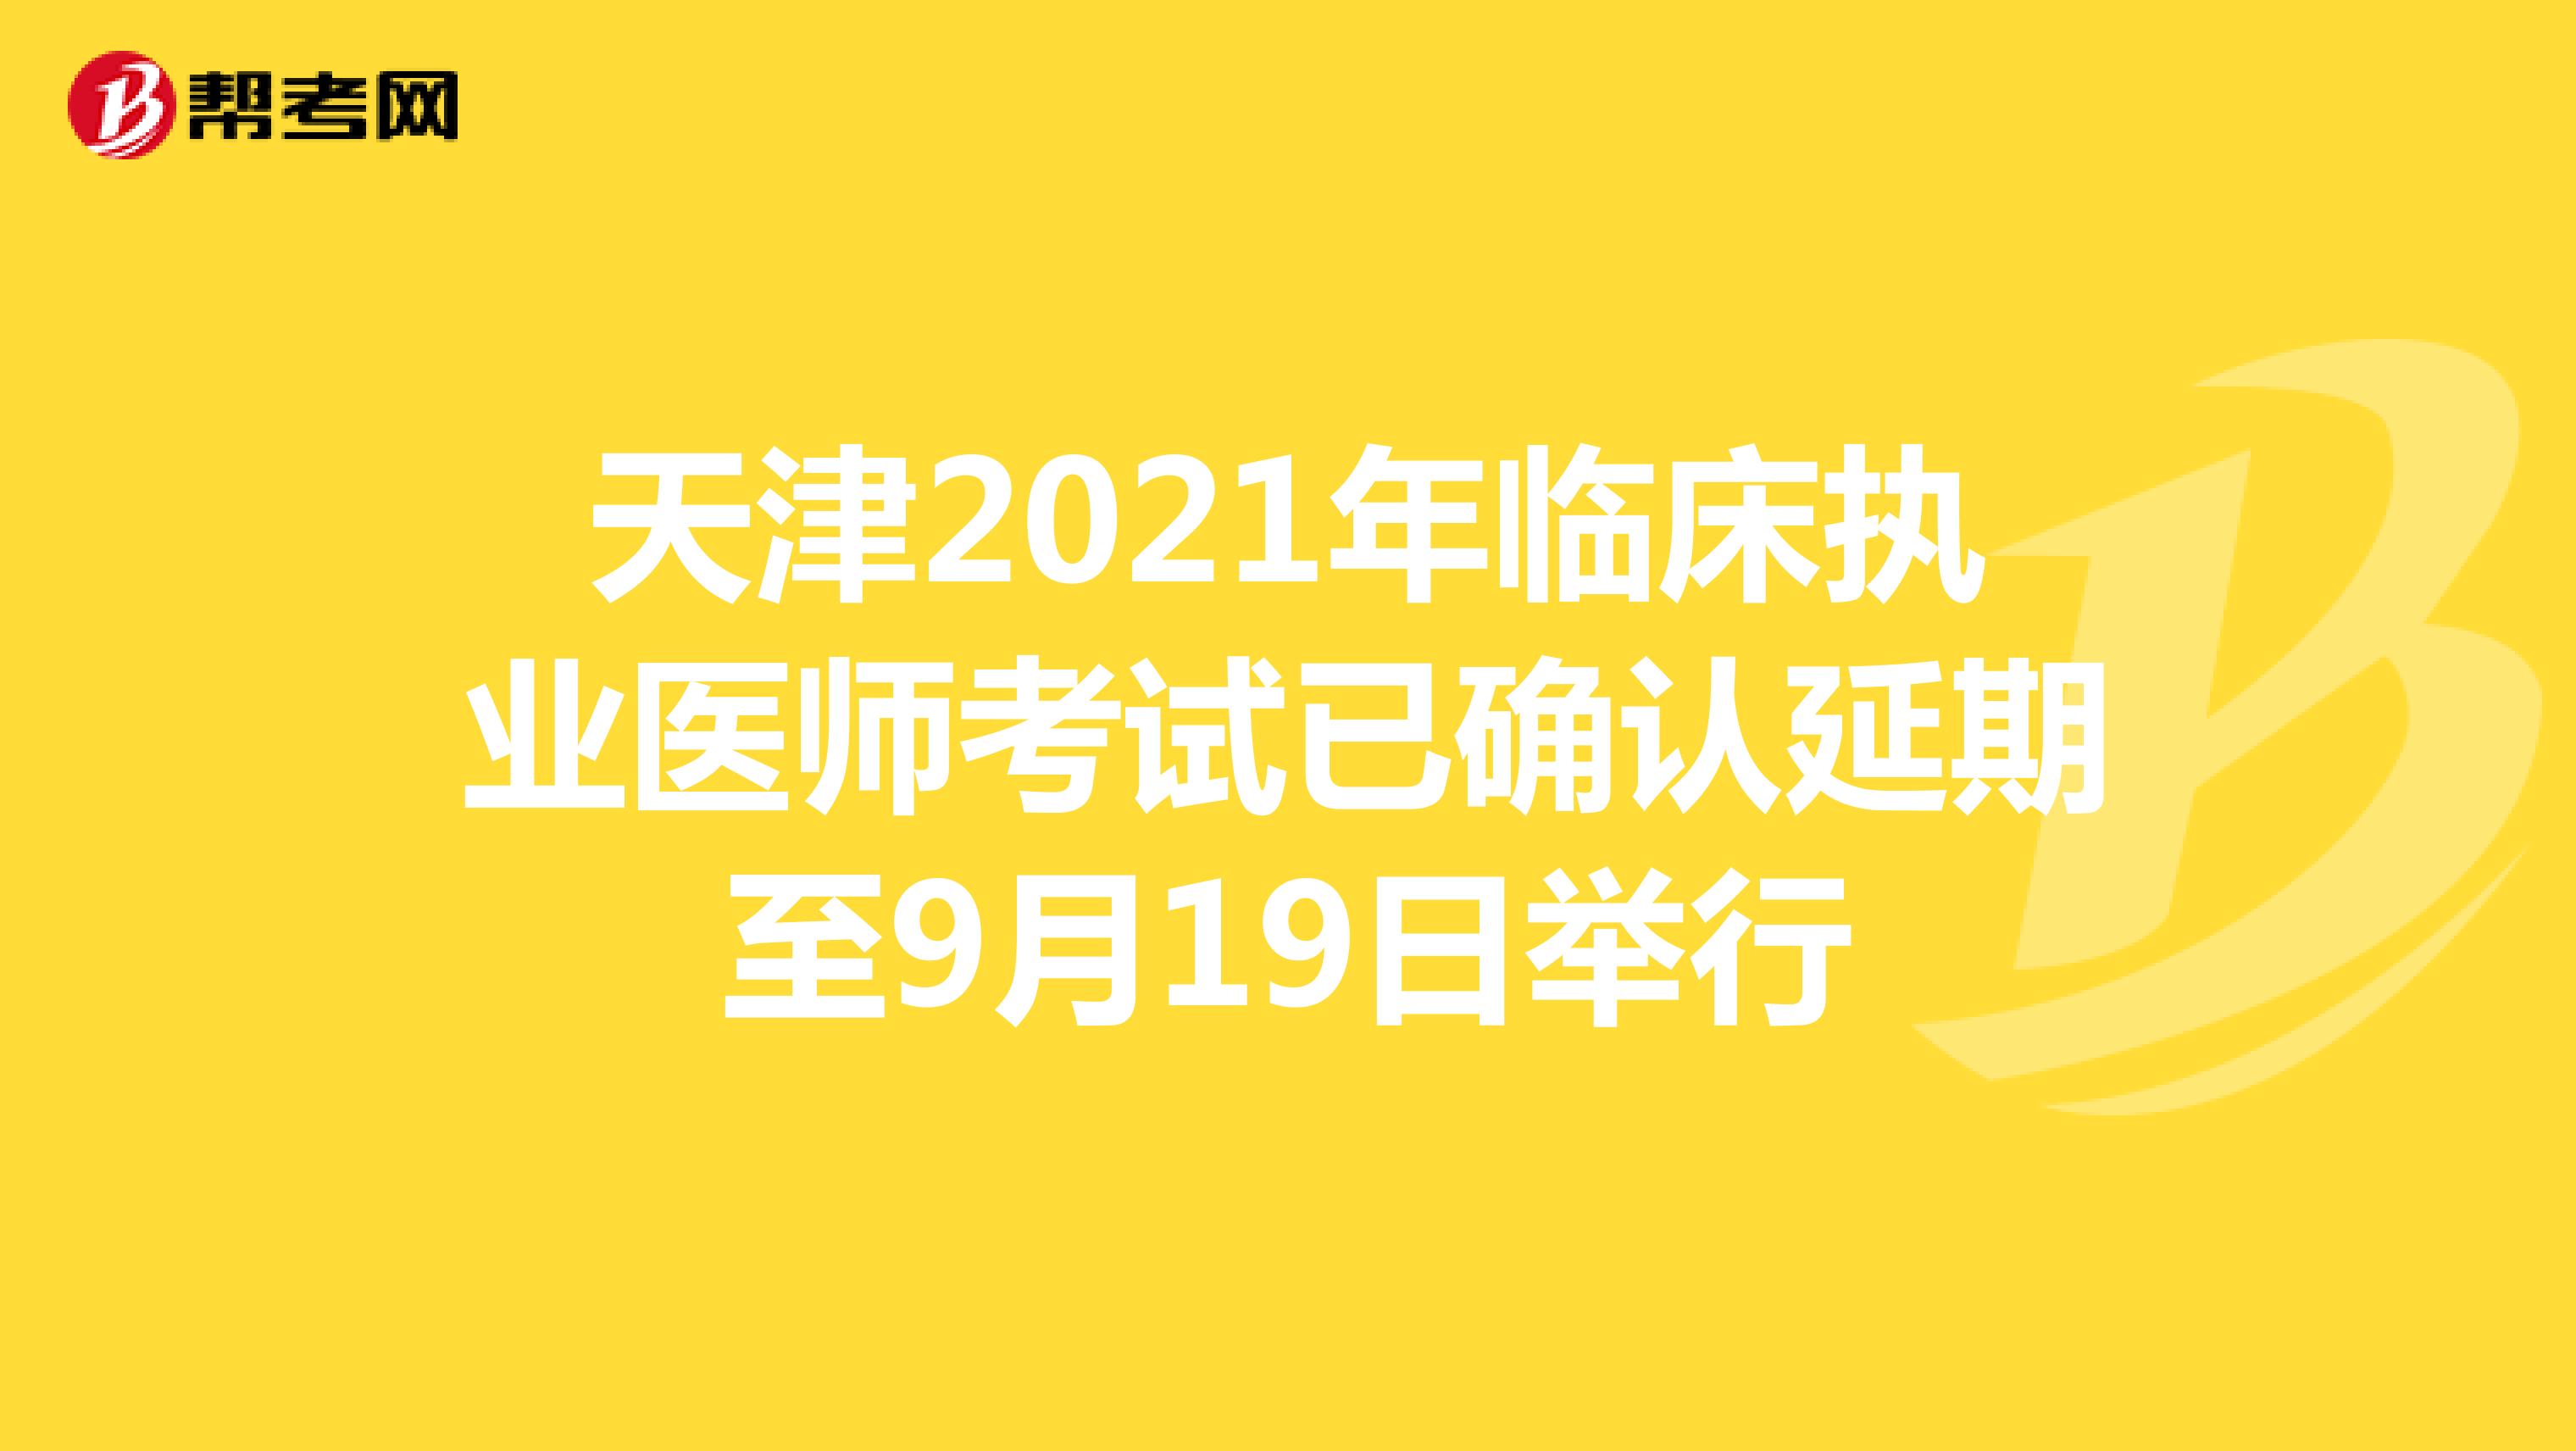 天津2021年临床执业医师考试已确认延期至9月19日举行